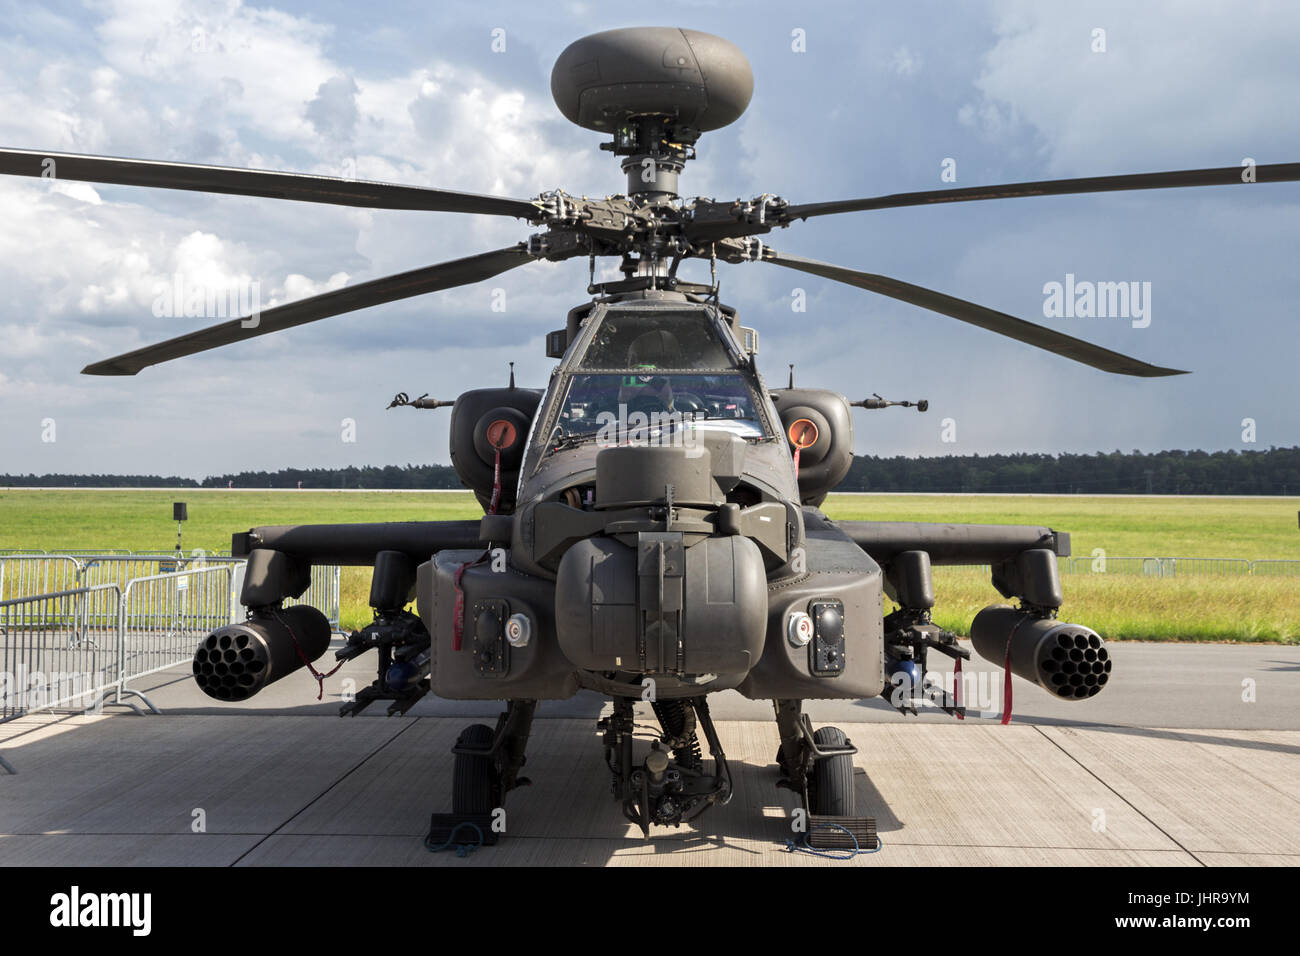 Berlín - jun 2, 2016: el ejército británico de helicópteros de ataque AH-64D en exhibición en el Salón aeronáutico ILA de Berlín Foto de stock